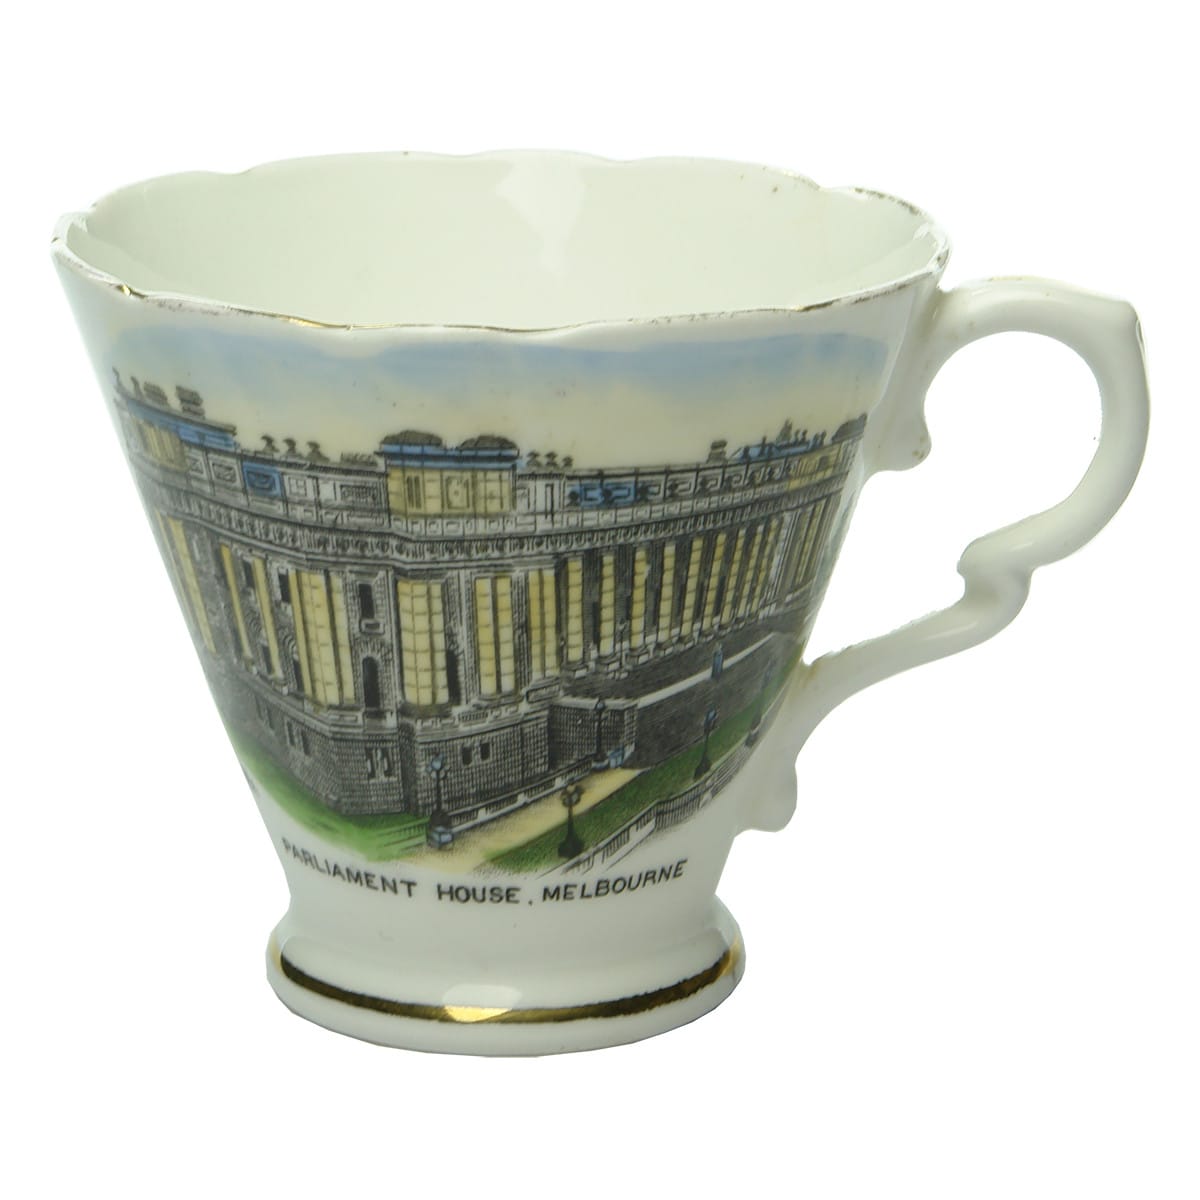 Souvenirware. Parliament House, Melbourne. Royal Stafford. Teacup. (Victoria)